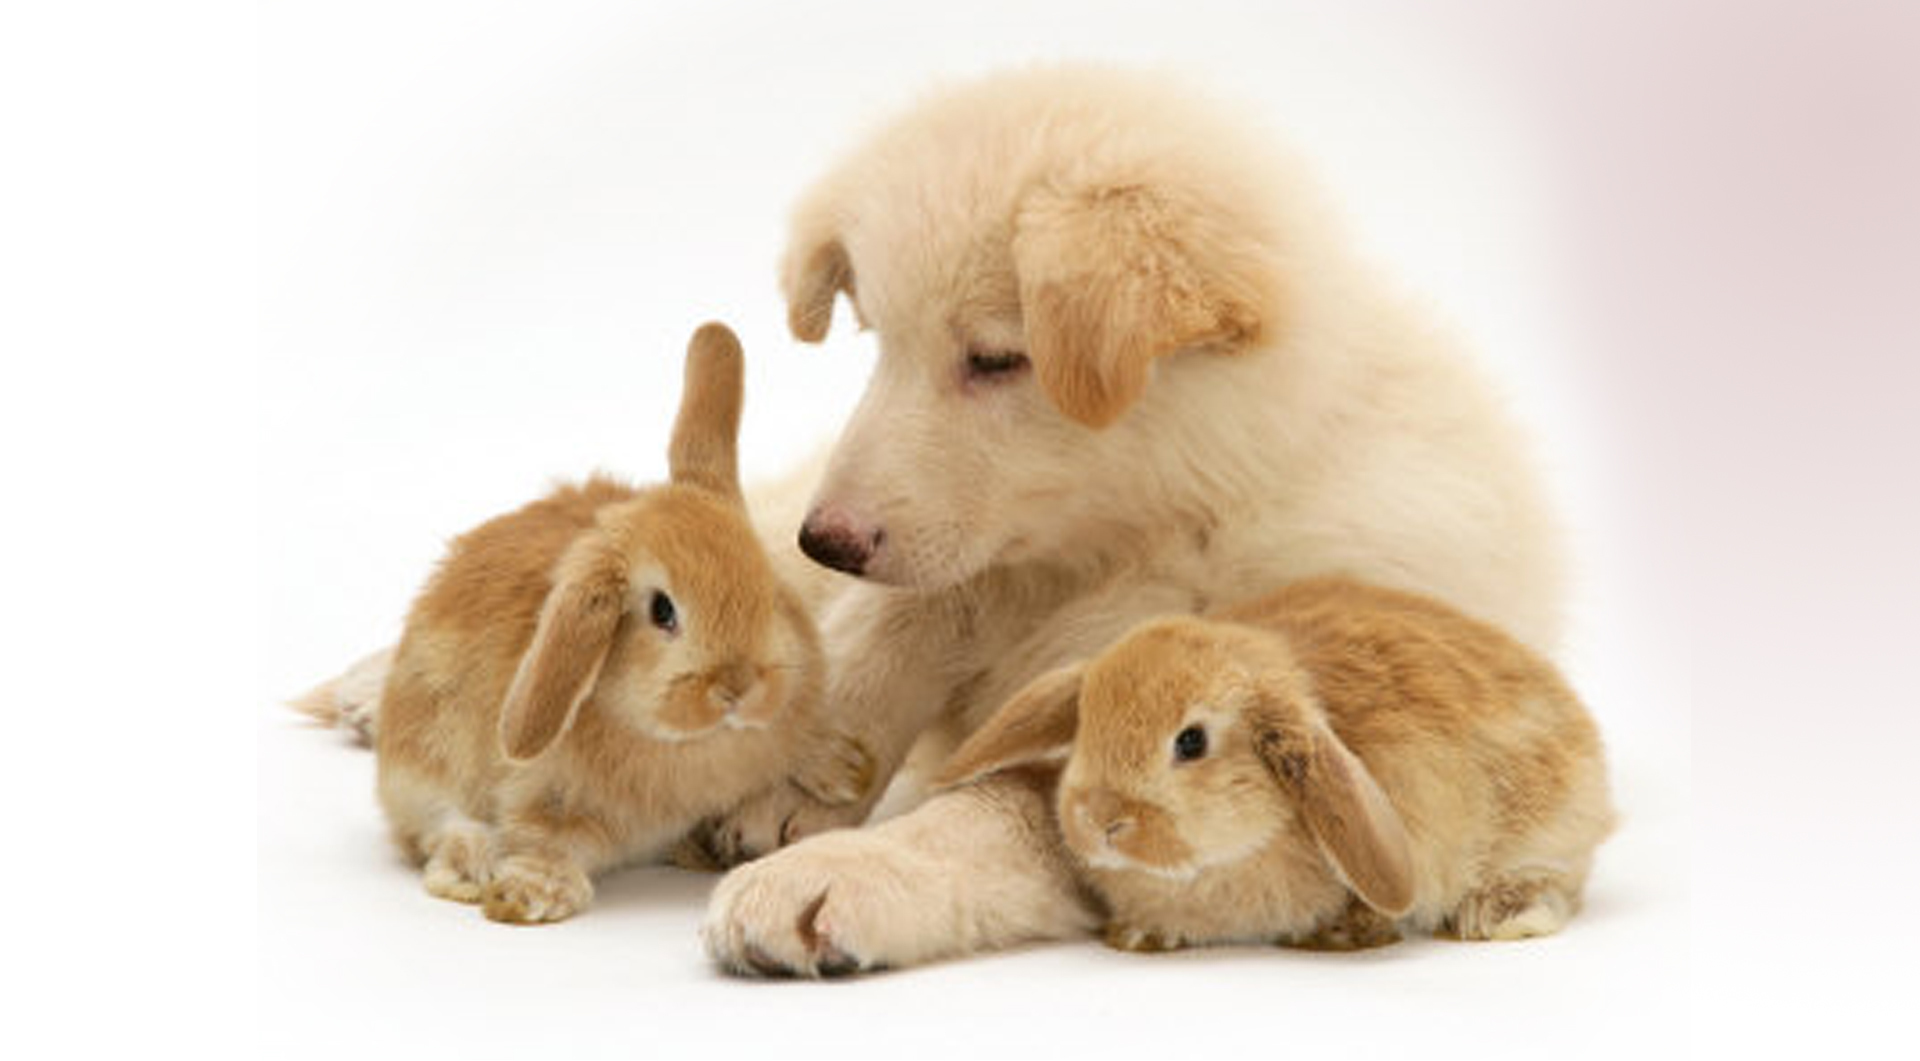 Descarga gratuita de fondo de pantalla para móvil de Conejos, Animales, Perros.